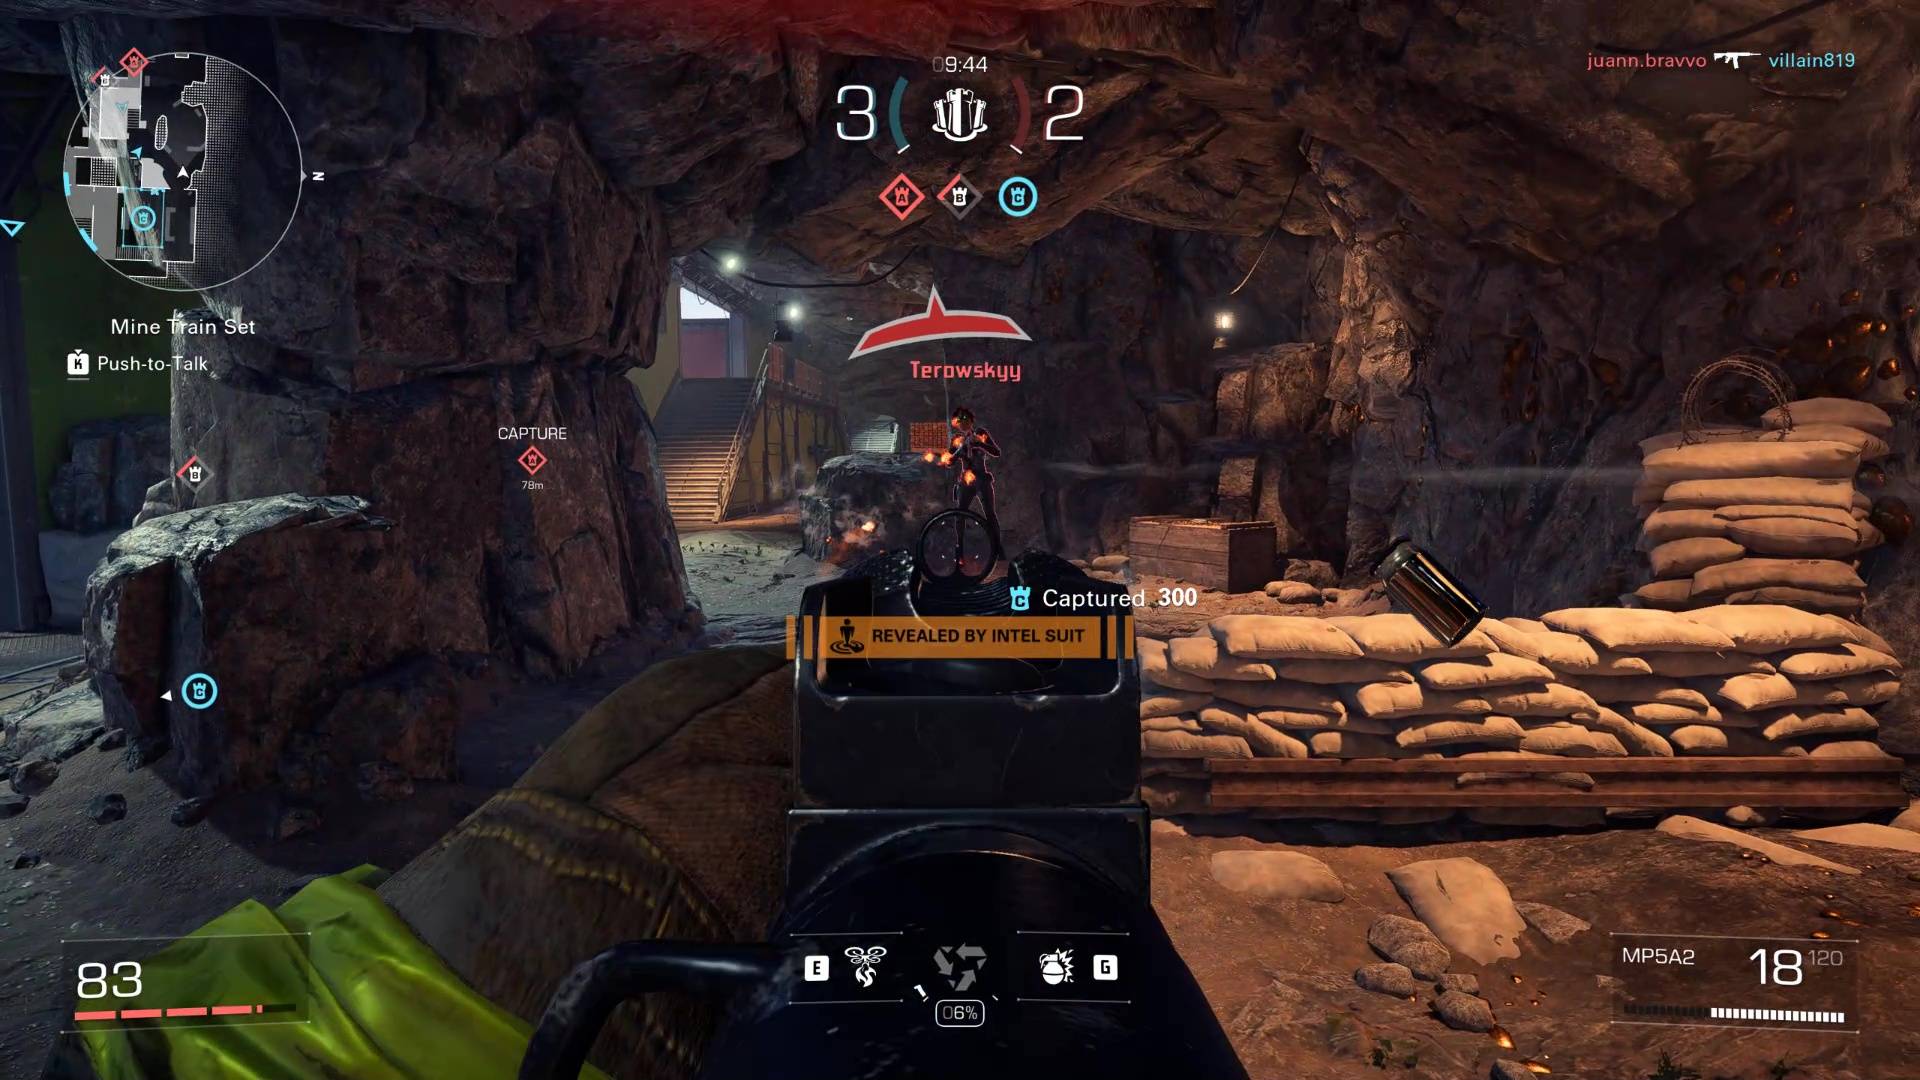 Snímek ze hry XDefiant ukazující přestřelku